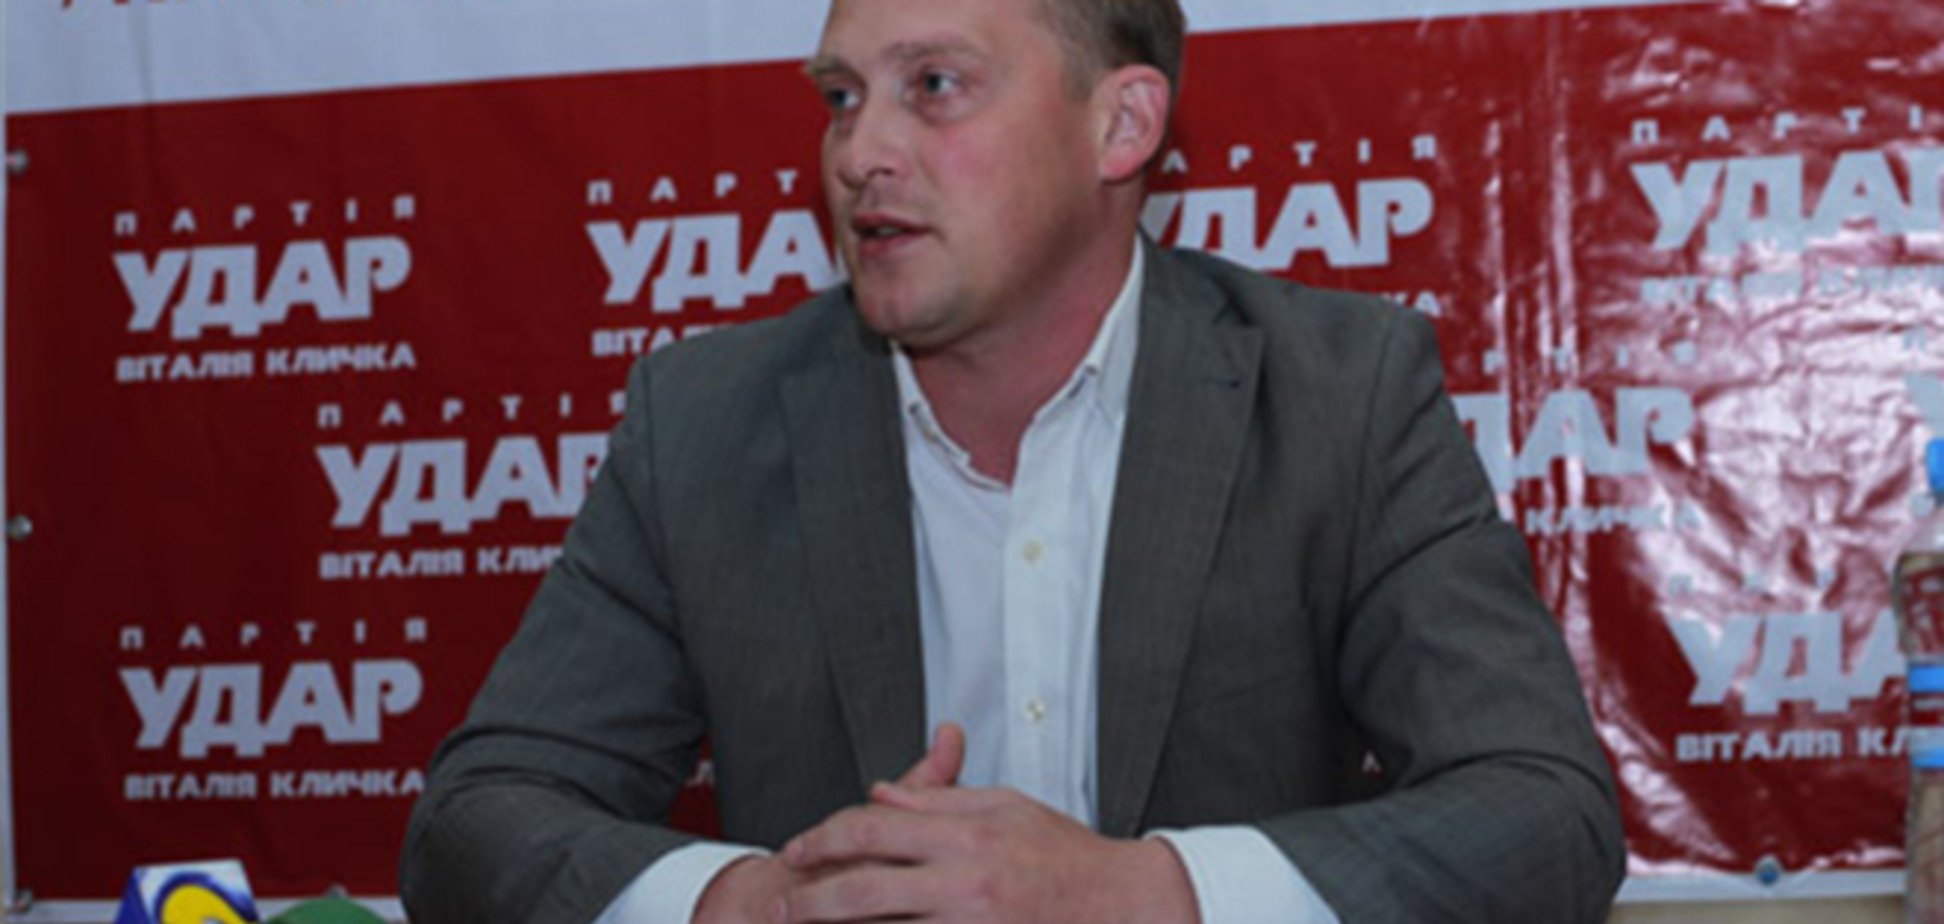 Оппозиционер обжаловал запрет на проведение акций в Киеве